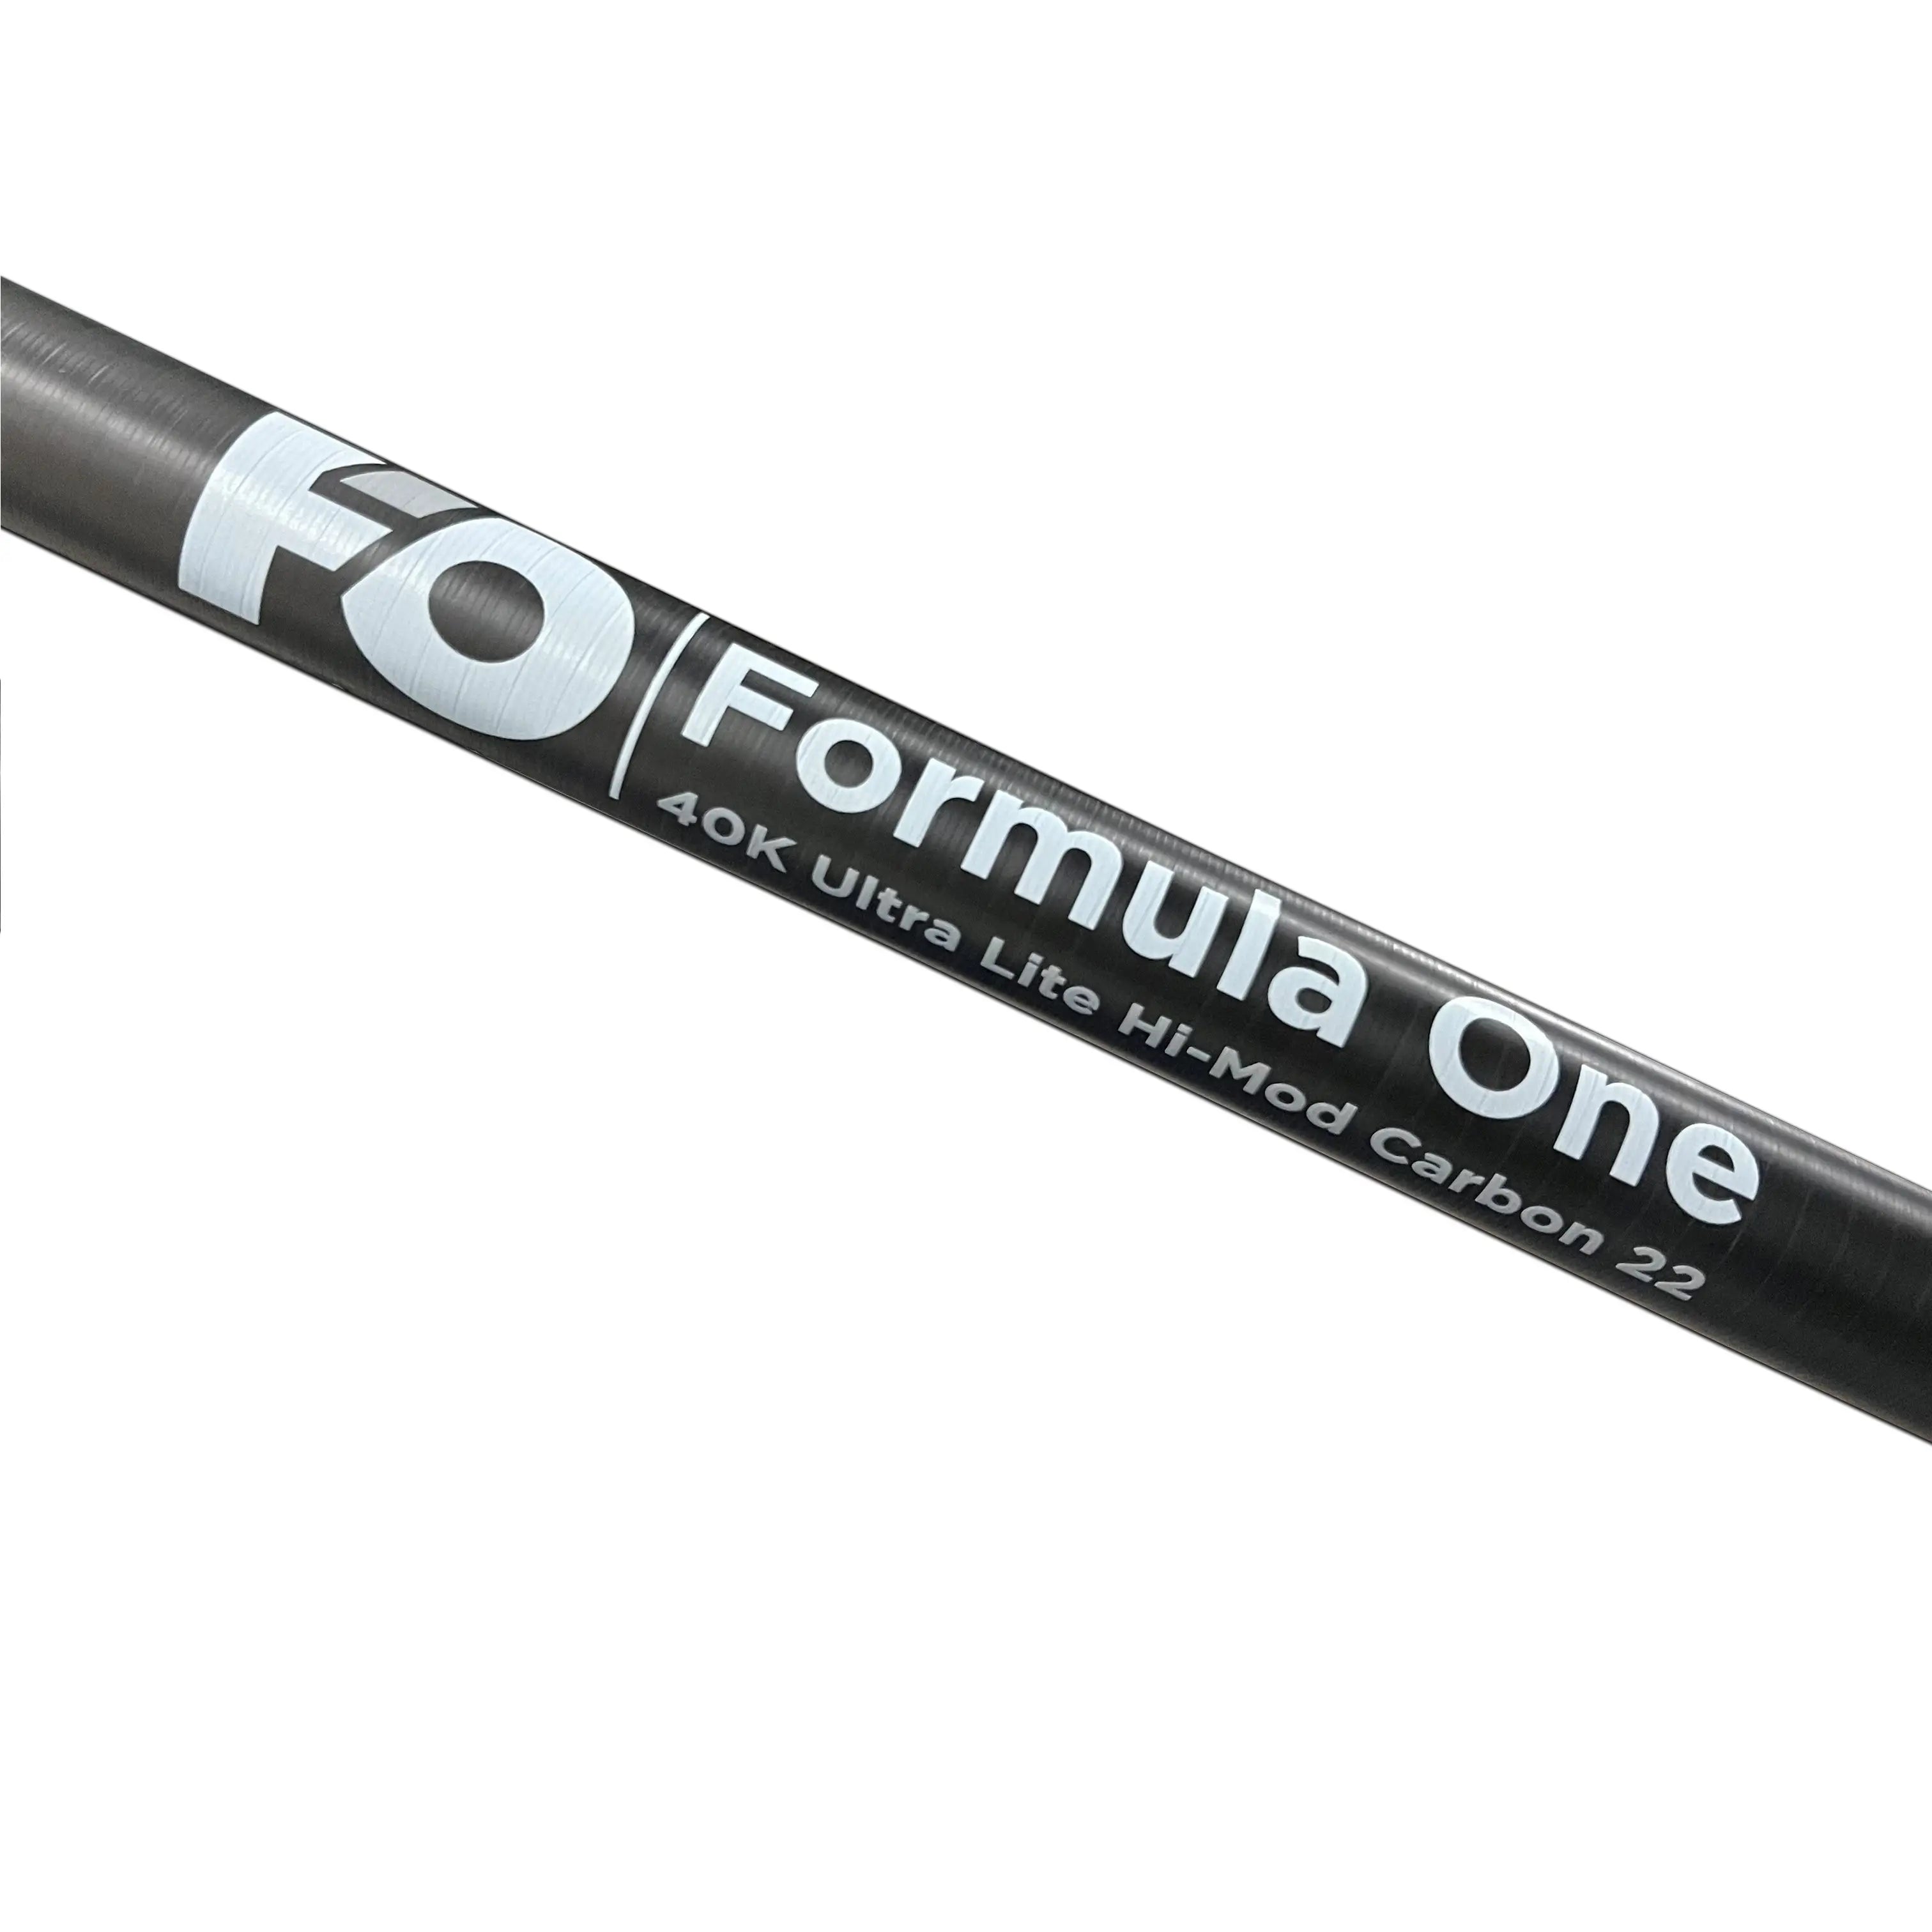 Formula One 40K Ultra-Lite-Hi-Mod-Carbon